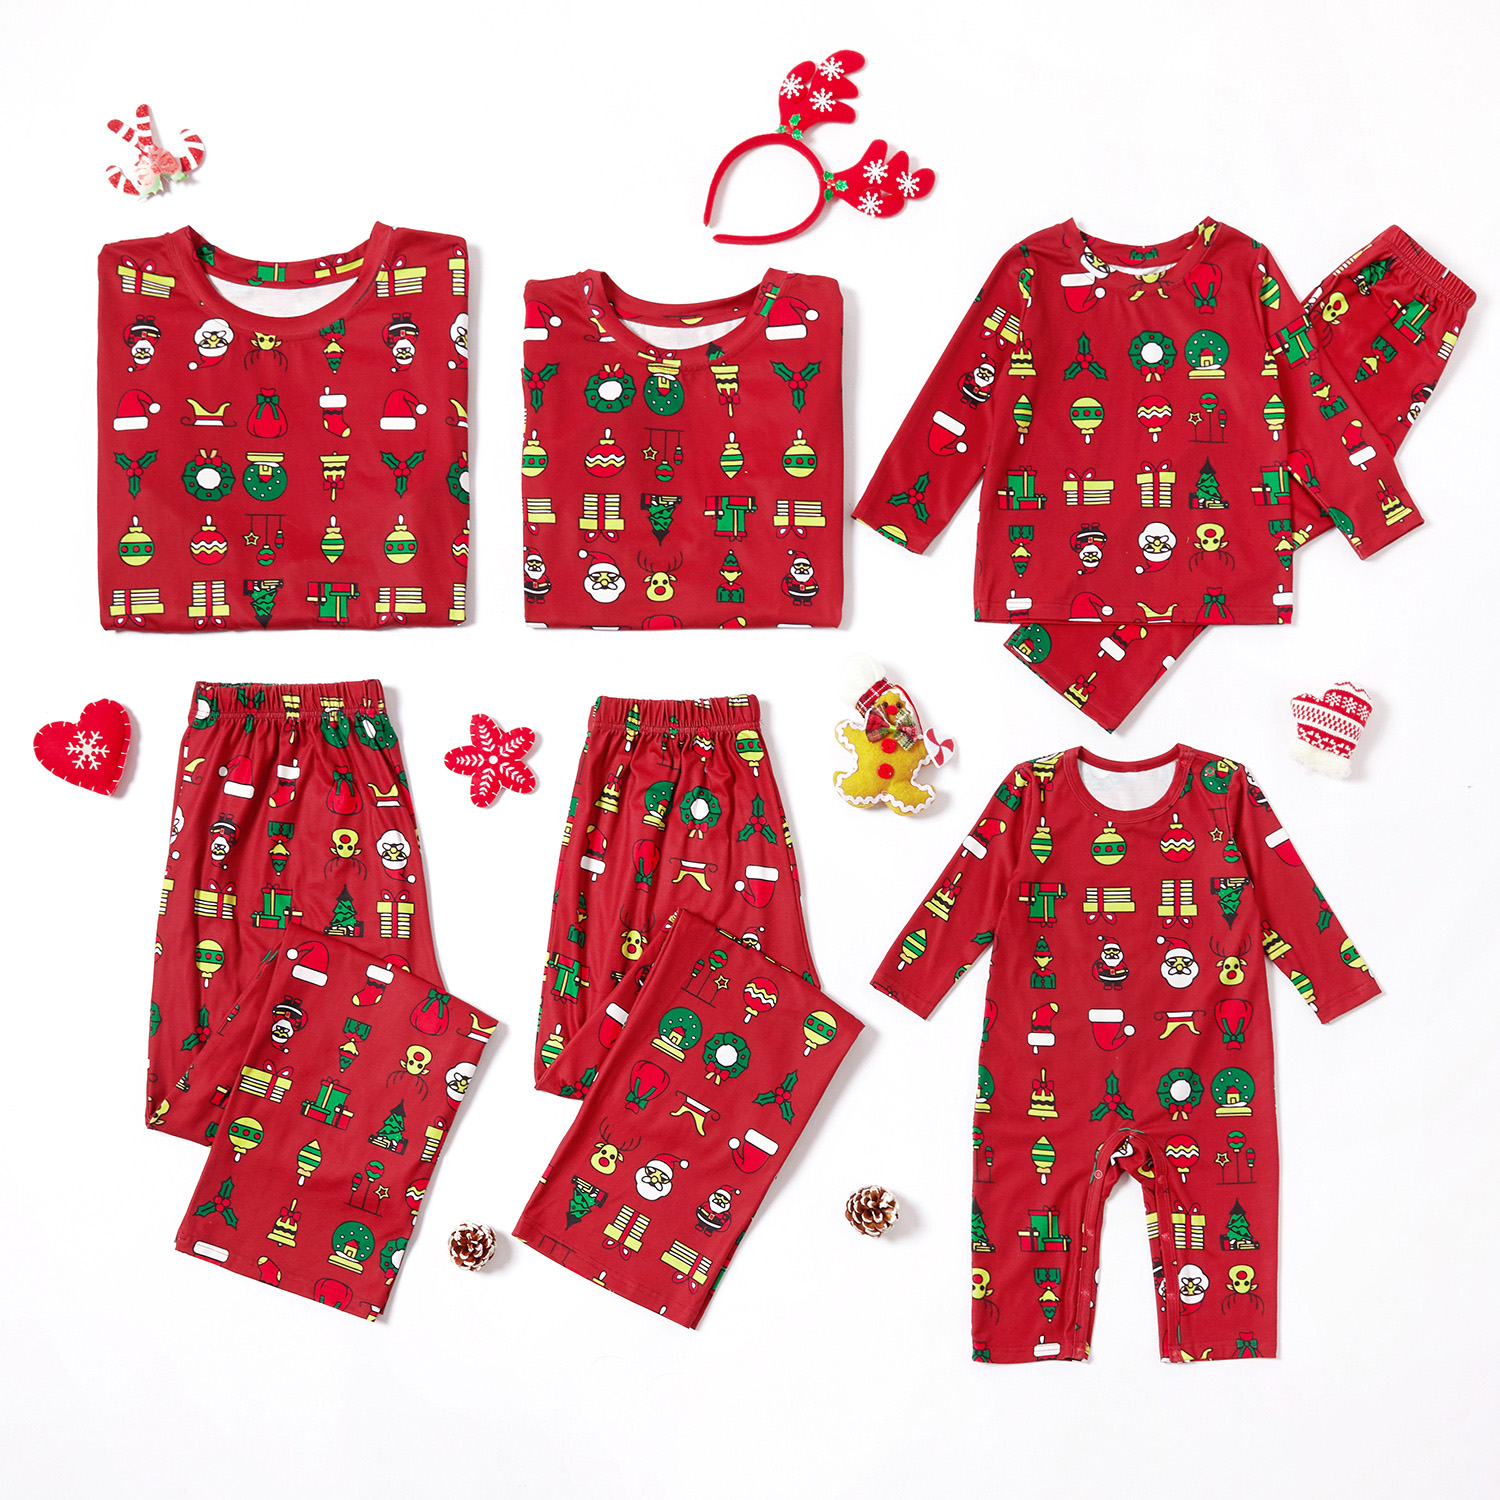 Merry Christmas Cartoon Print Family Matching Pajamas Set